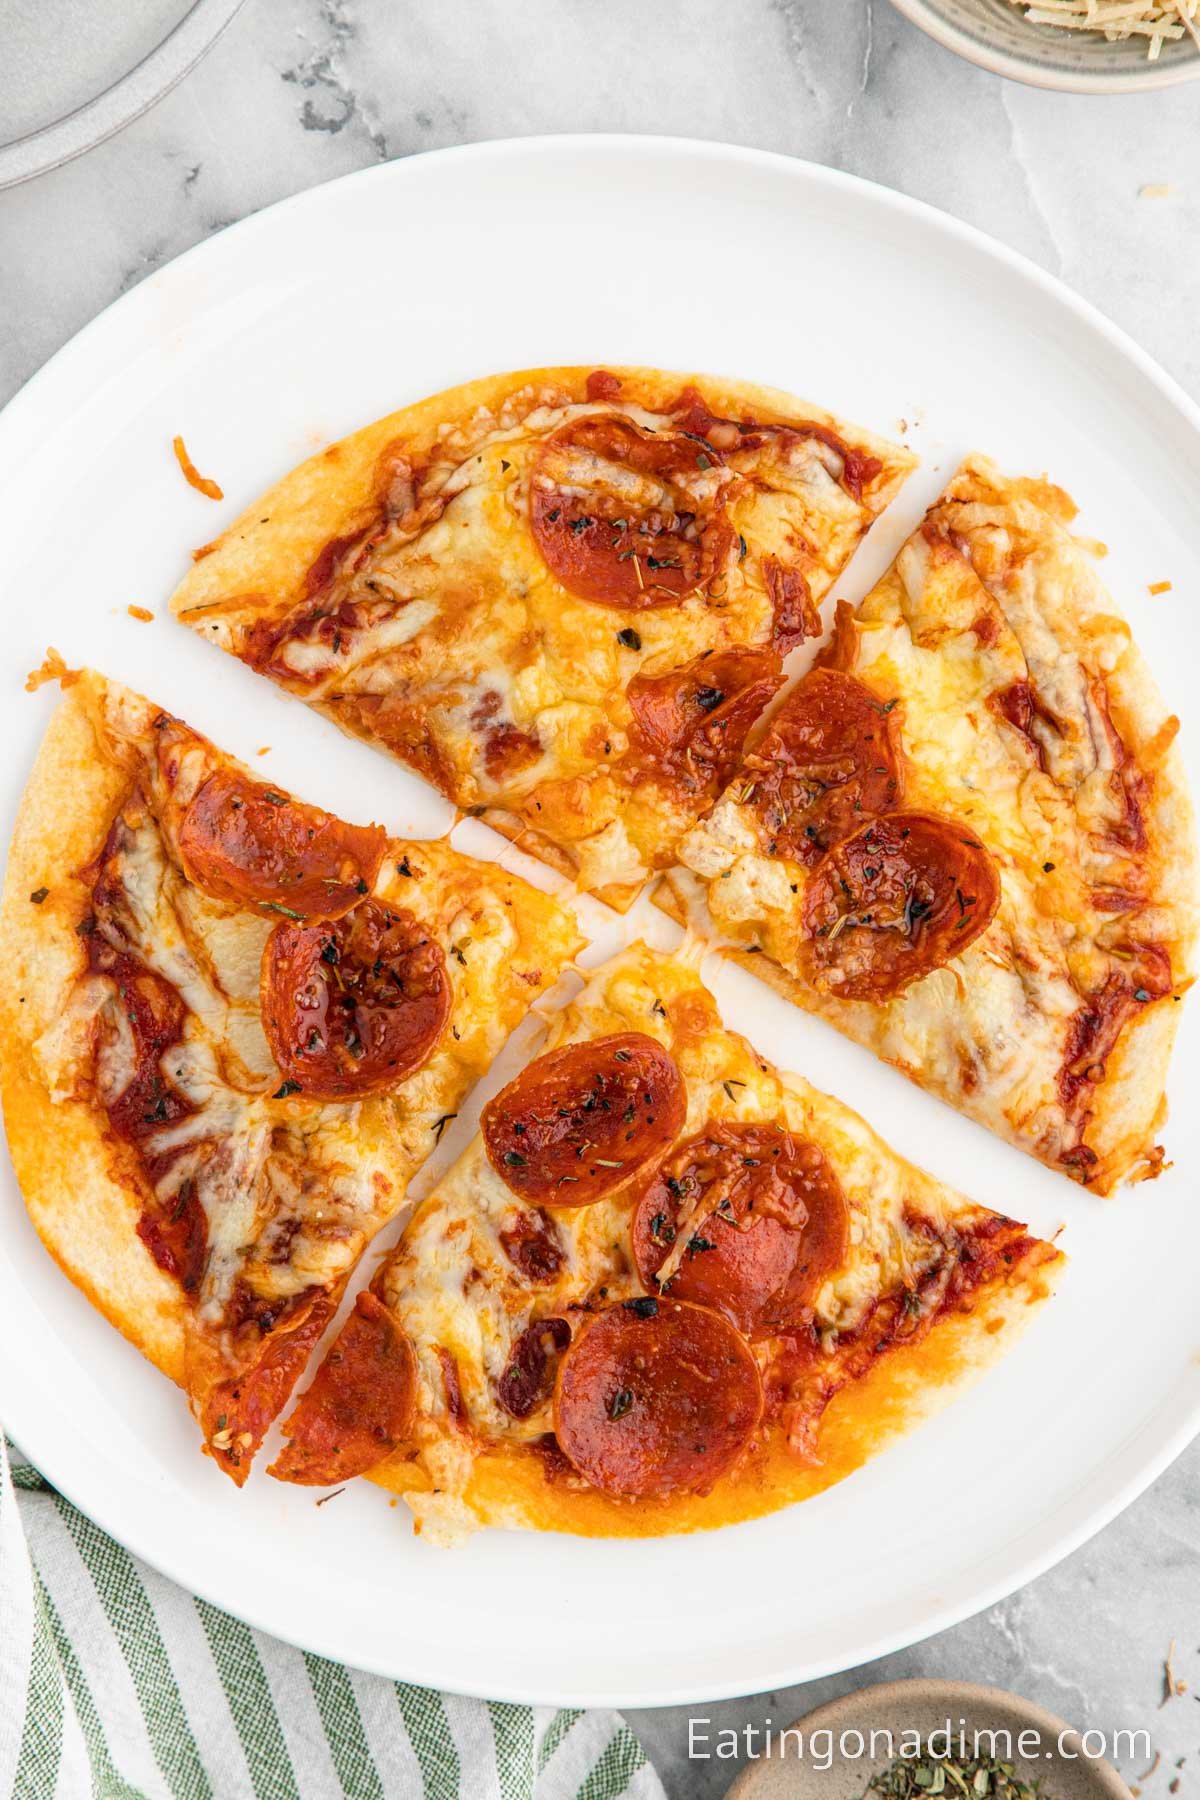 https://www.eatingonadime.com/wp-content/uploads/2023/05/Air-Fryer-Tortilla-Pizza-200-300KB-10.jpg